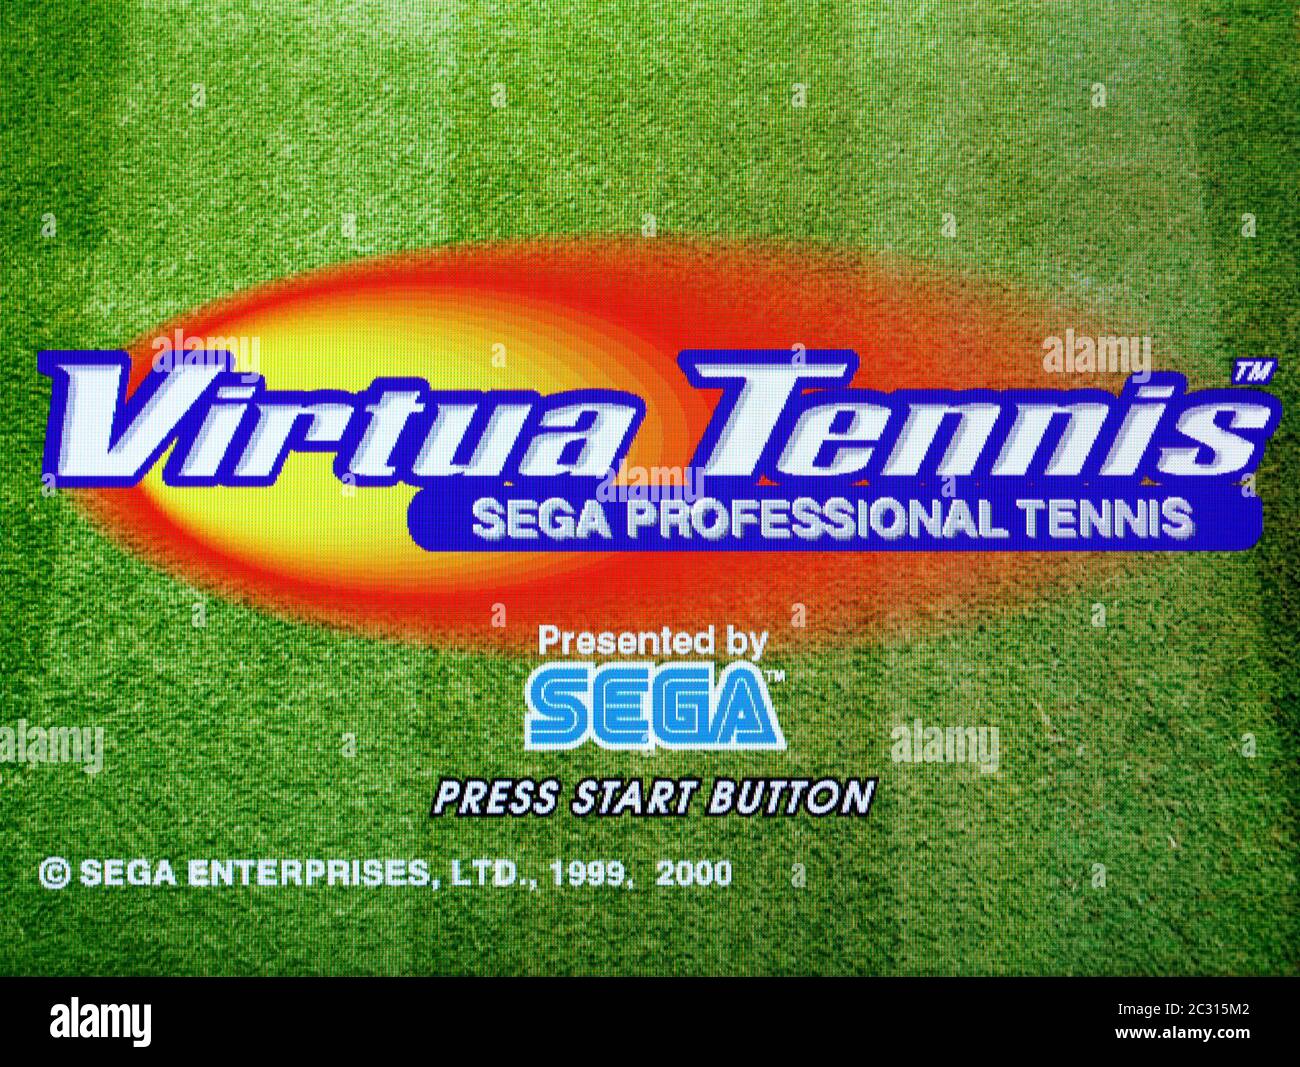 Steam virtua tennis фото 42